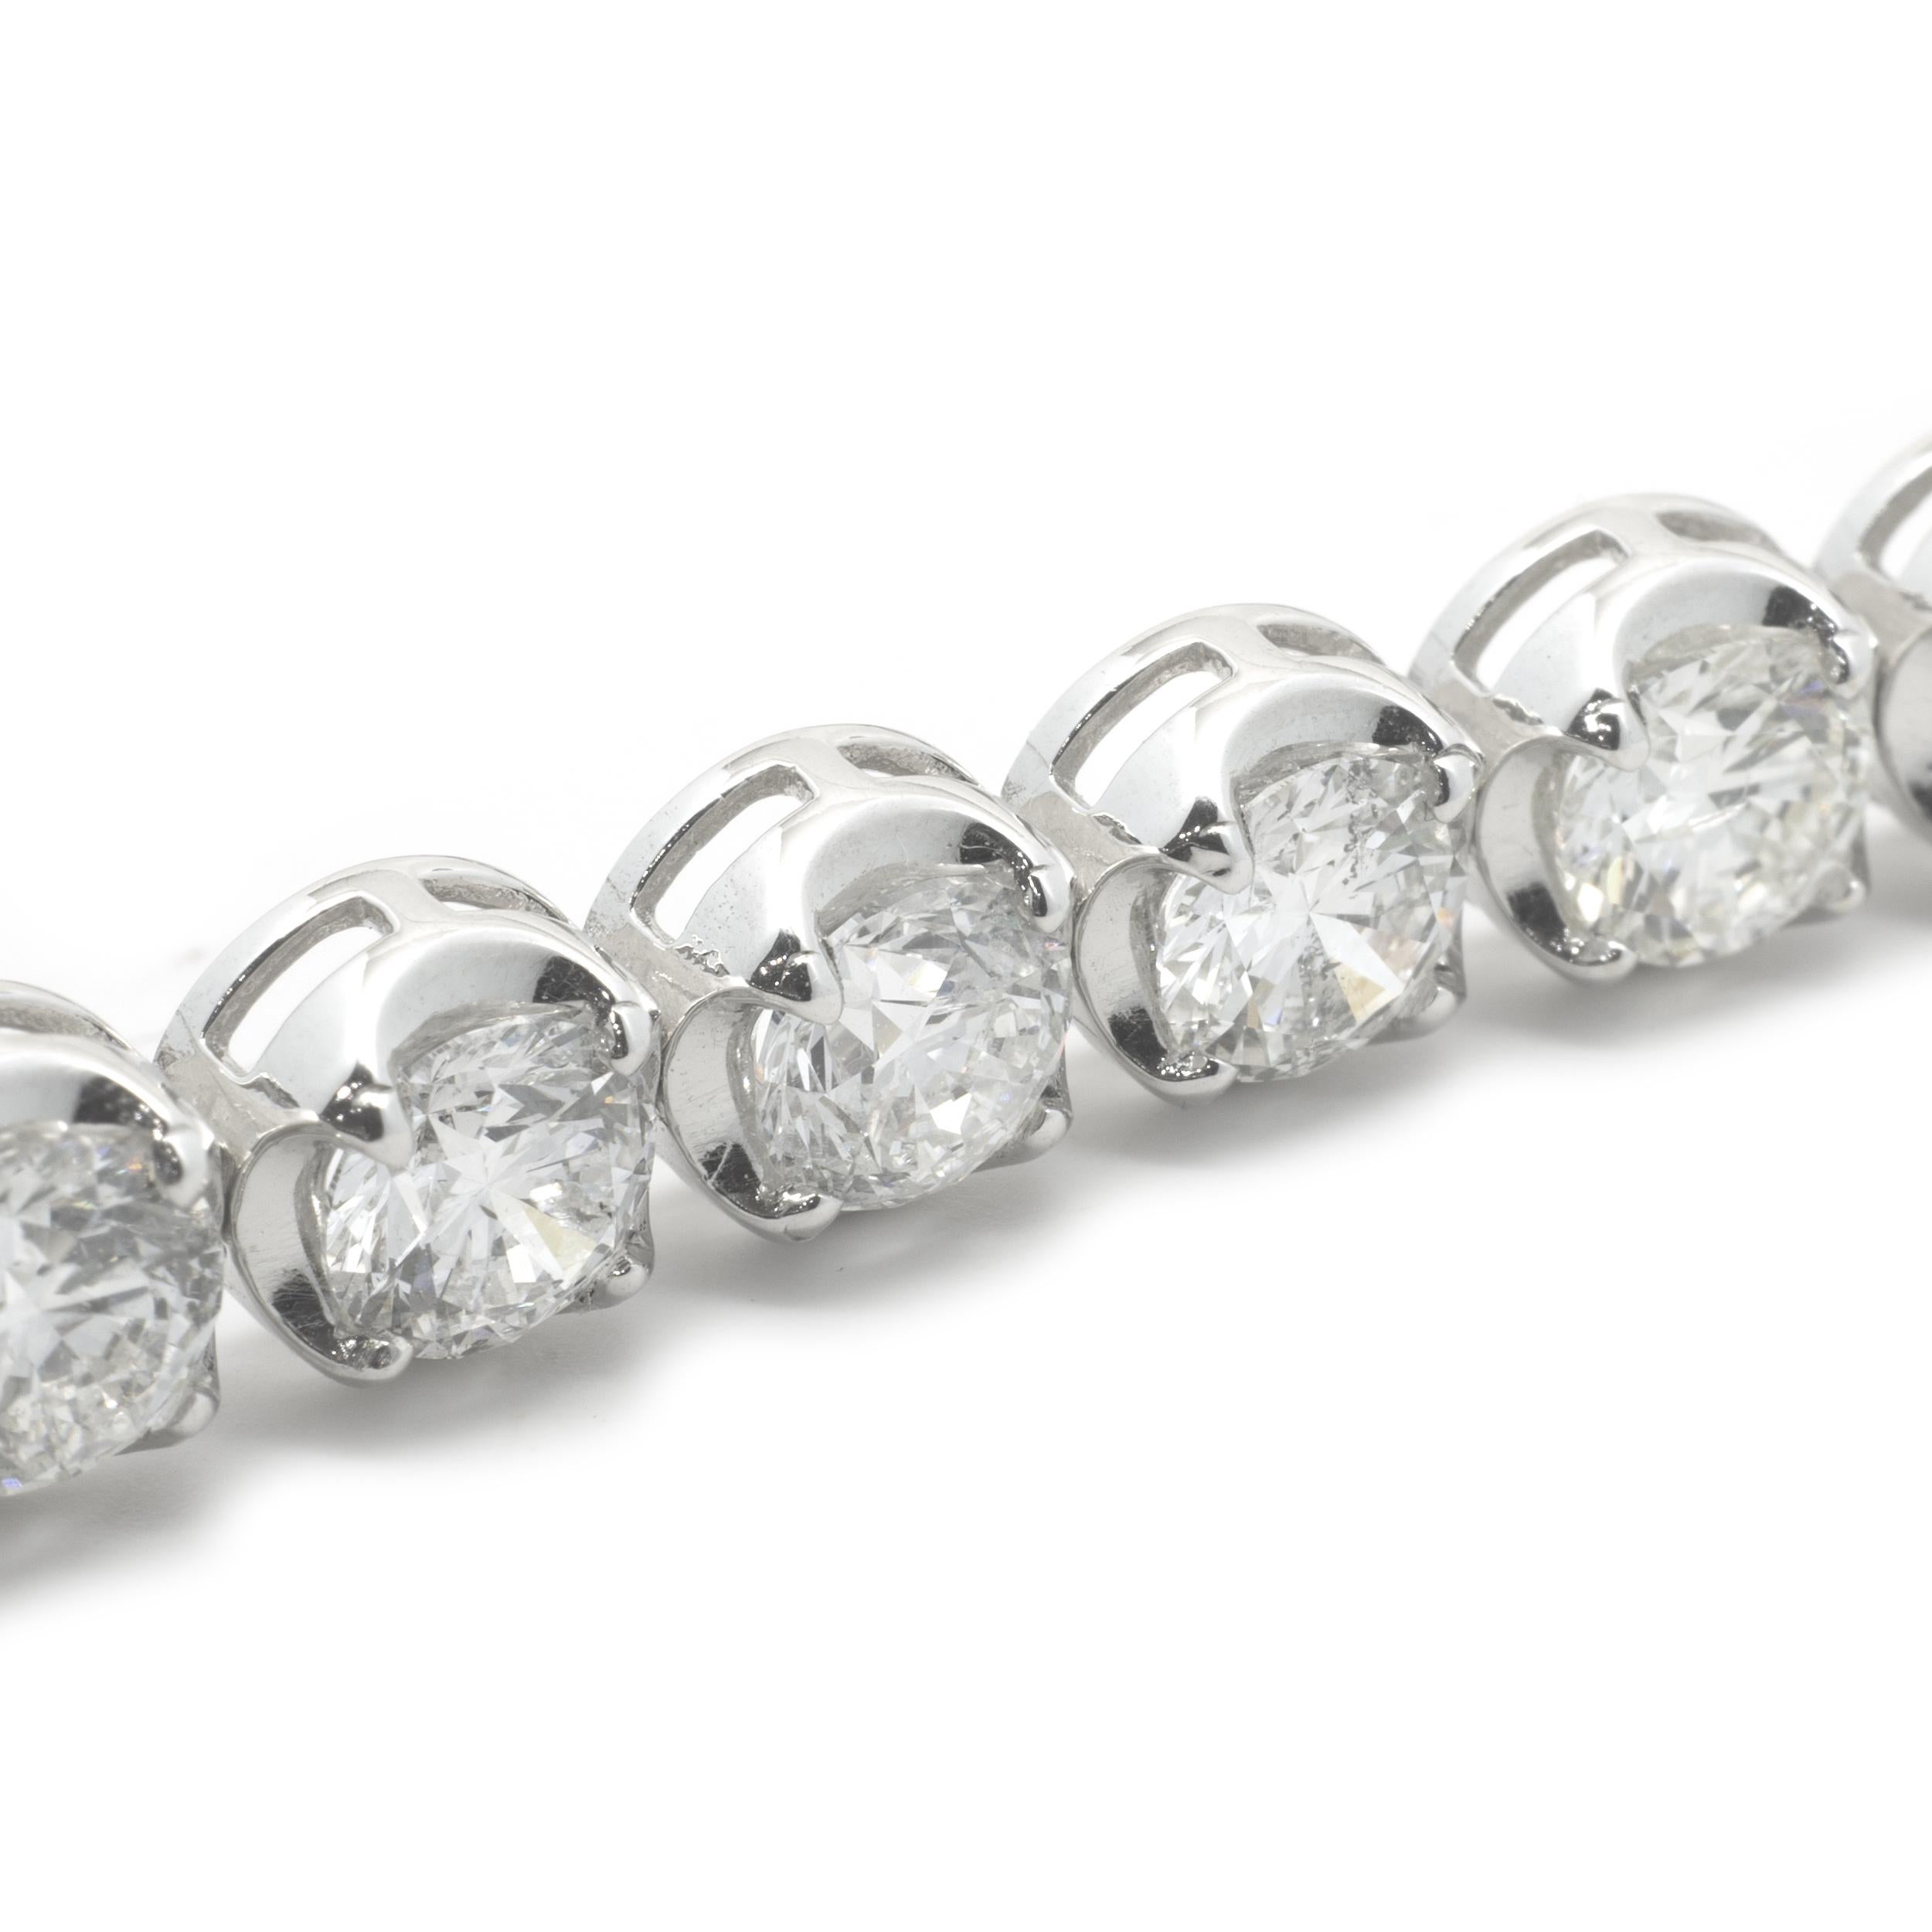 Concepteur : personnalisé
Matériau : Or blanc 14K
Diamants : 26 diamants ronds de taille brillant = 14.05cttw
Couleur : E
Clarté : SI1
Dimensions : le bracelet s'adapte à un poignet de 7 pouces.
Poids : 17,24 grammes
